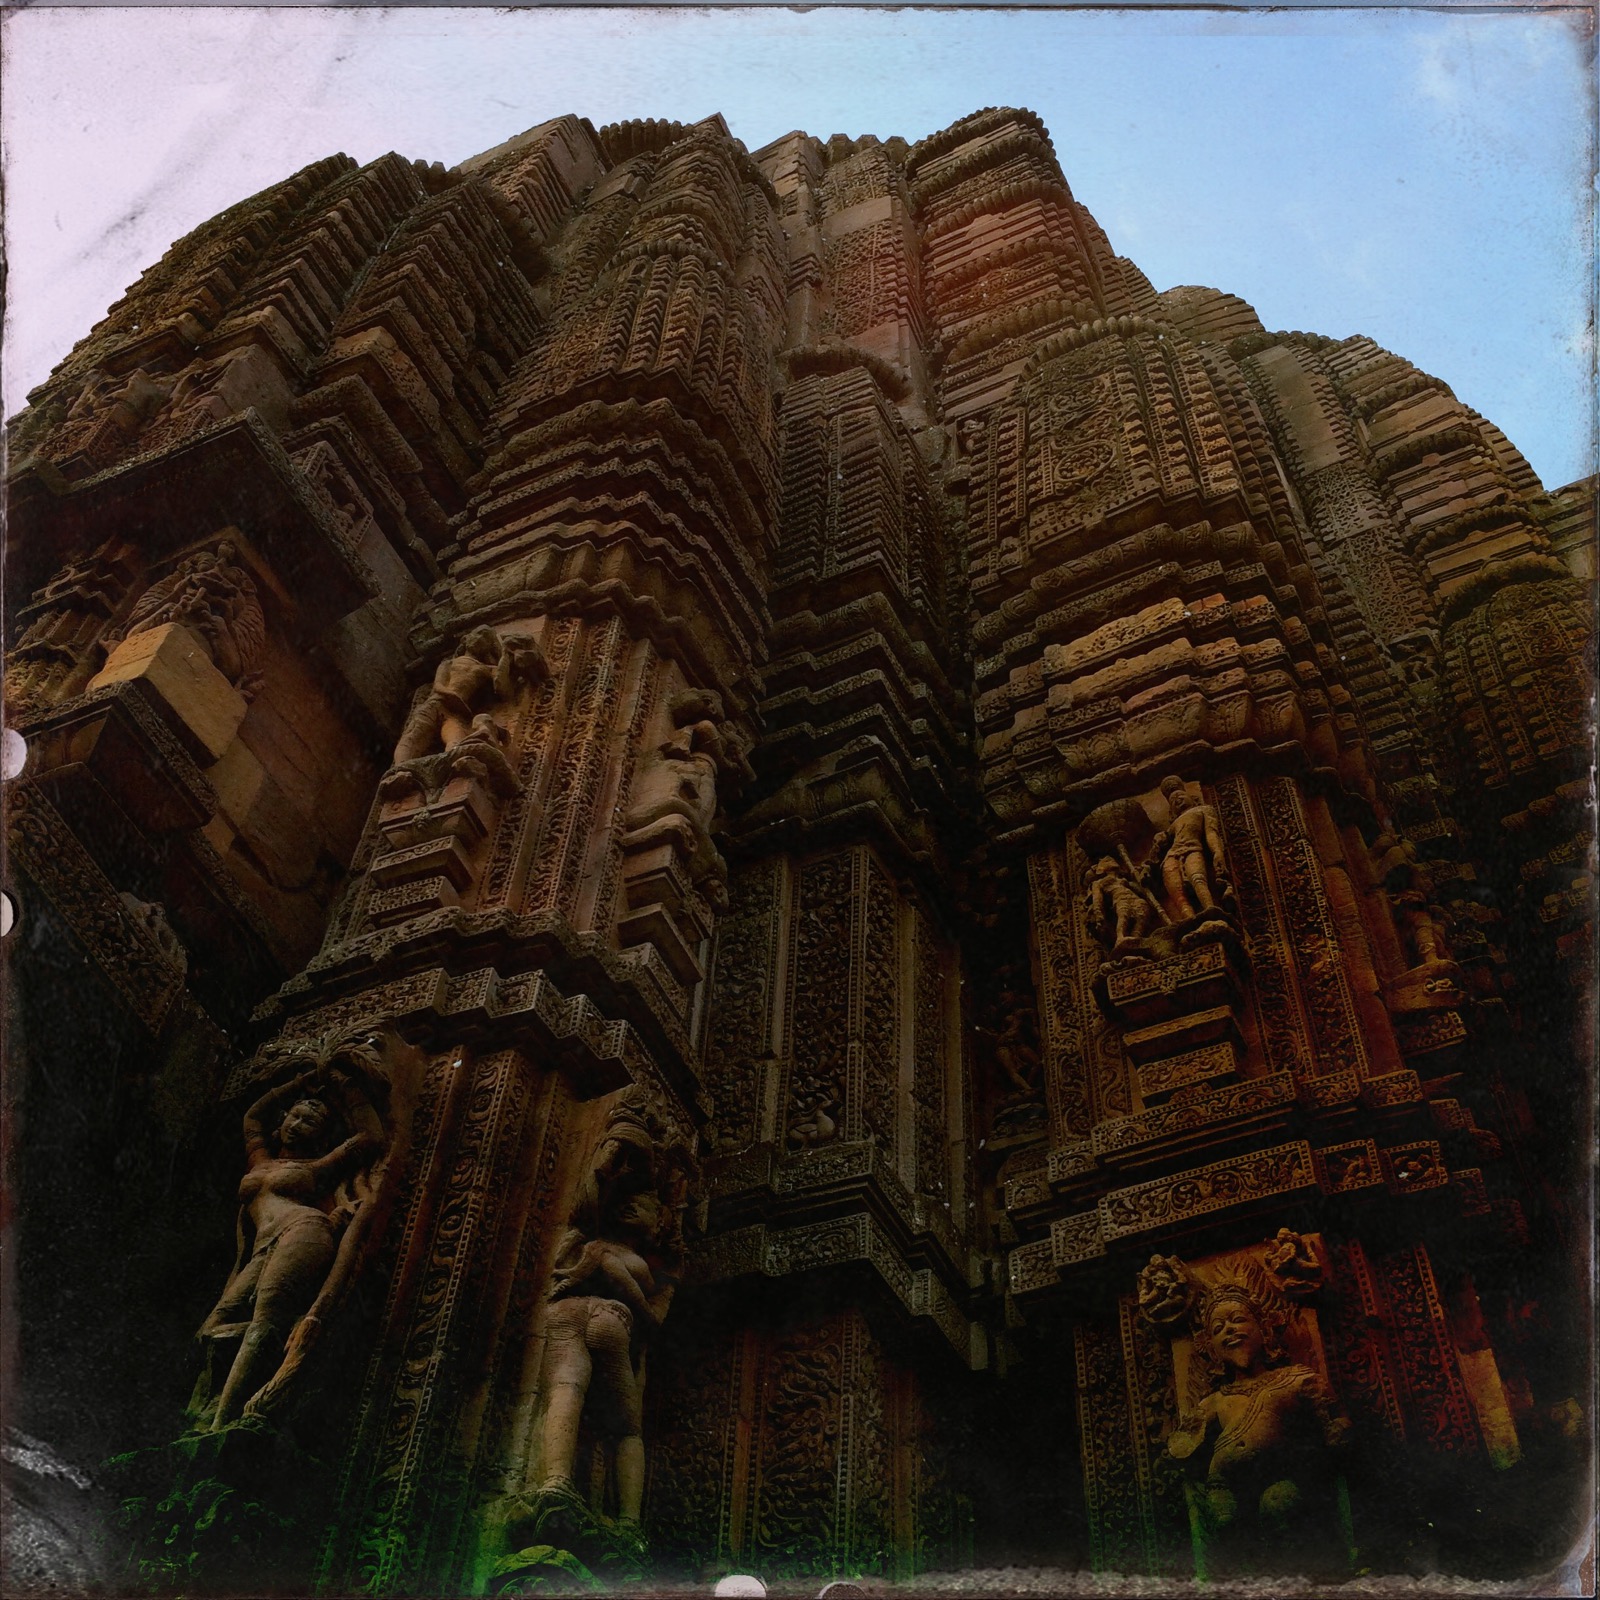 Raja Rani Temple